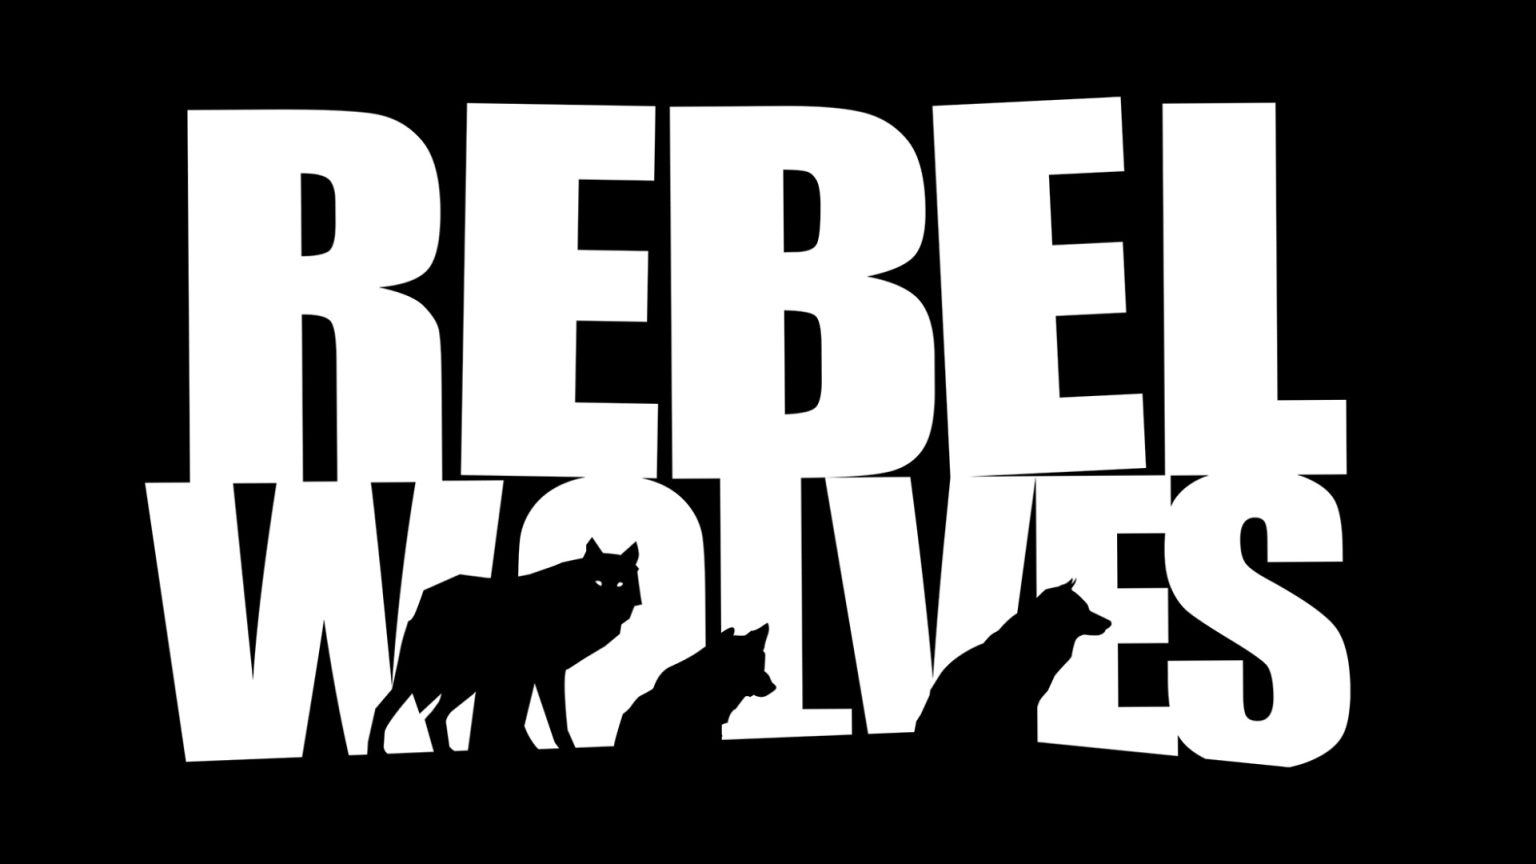 Rebel Wolves延聘《巫师3》资深人士为创意总监 3A偶幻RPG开支中